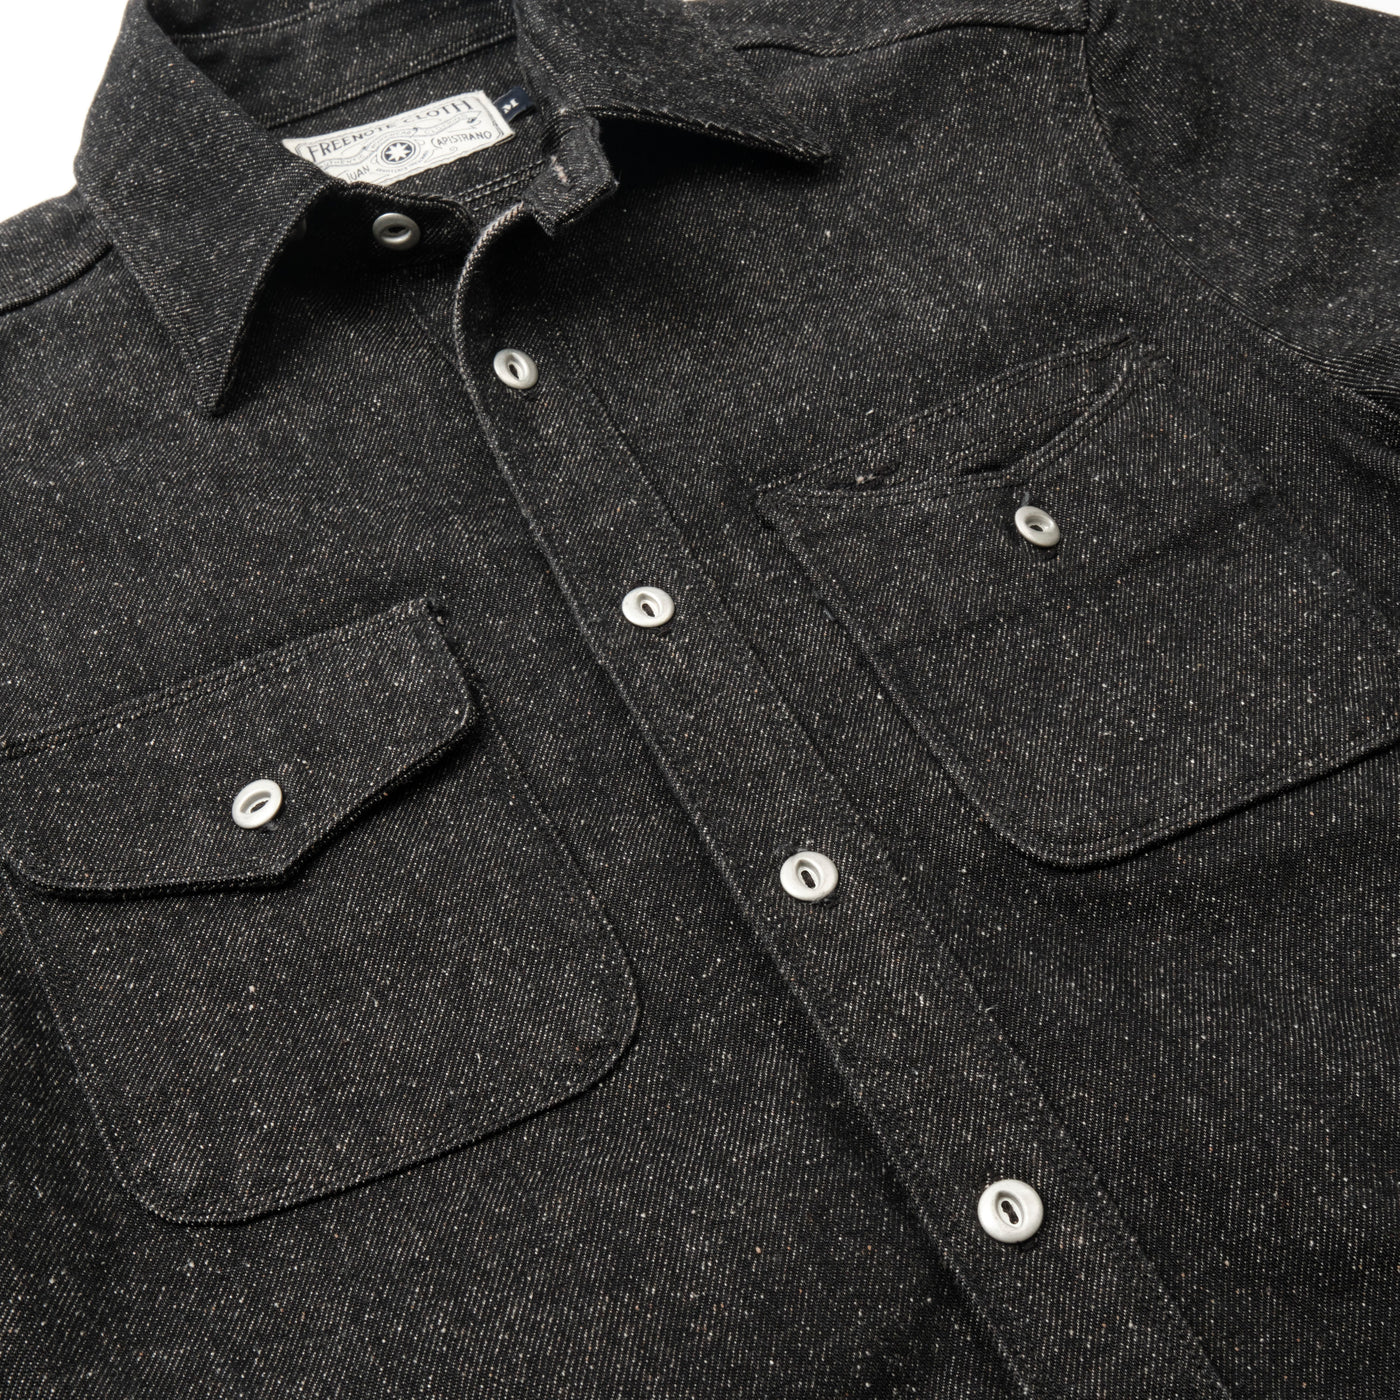 Freenote Cloth Lambert Shirt - Black Nep Denim